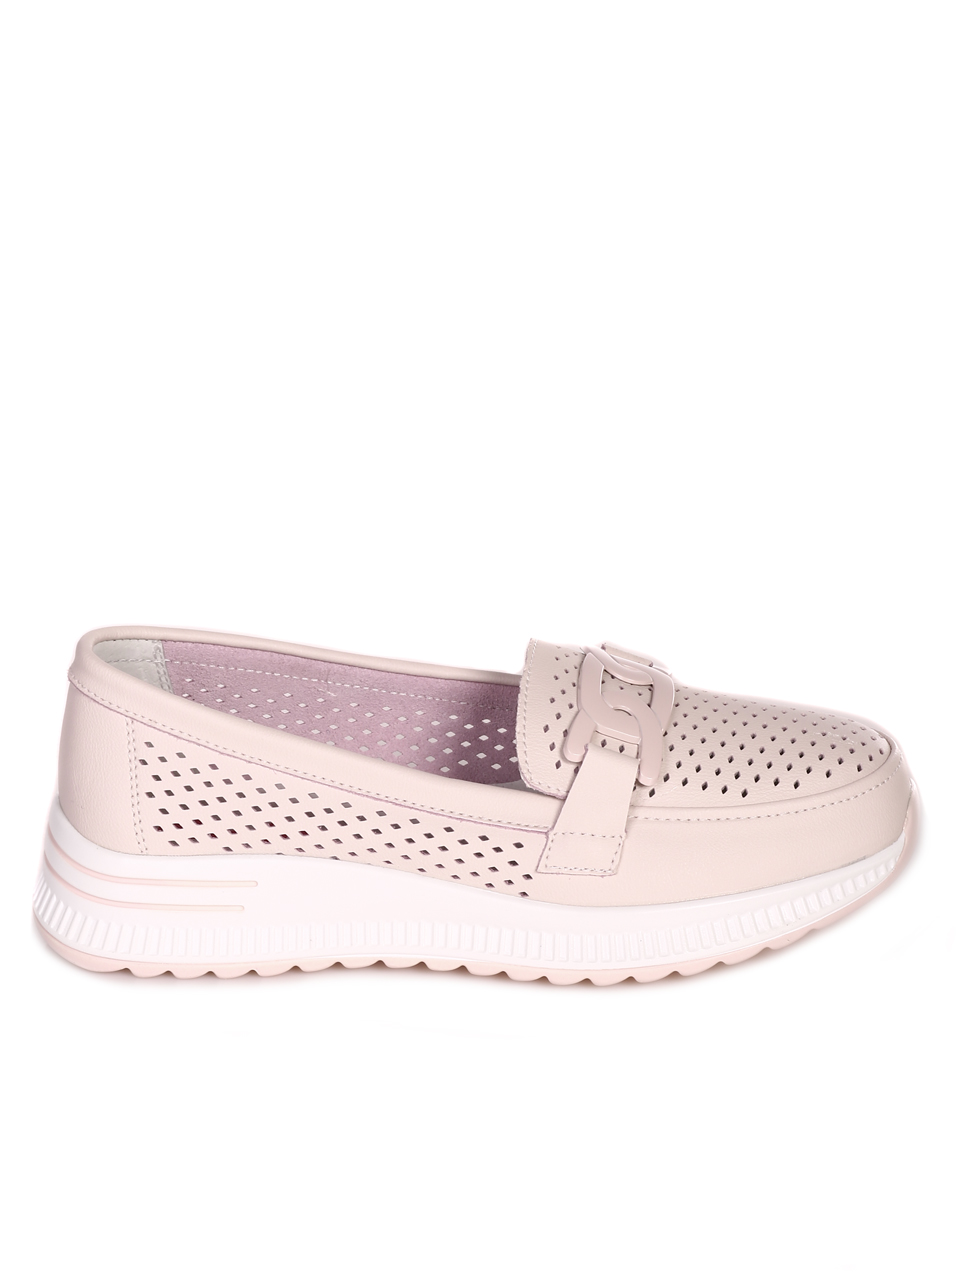 Ежедневни дамски комфортни обувки от естествена кожа 3AF-23144 pink